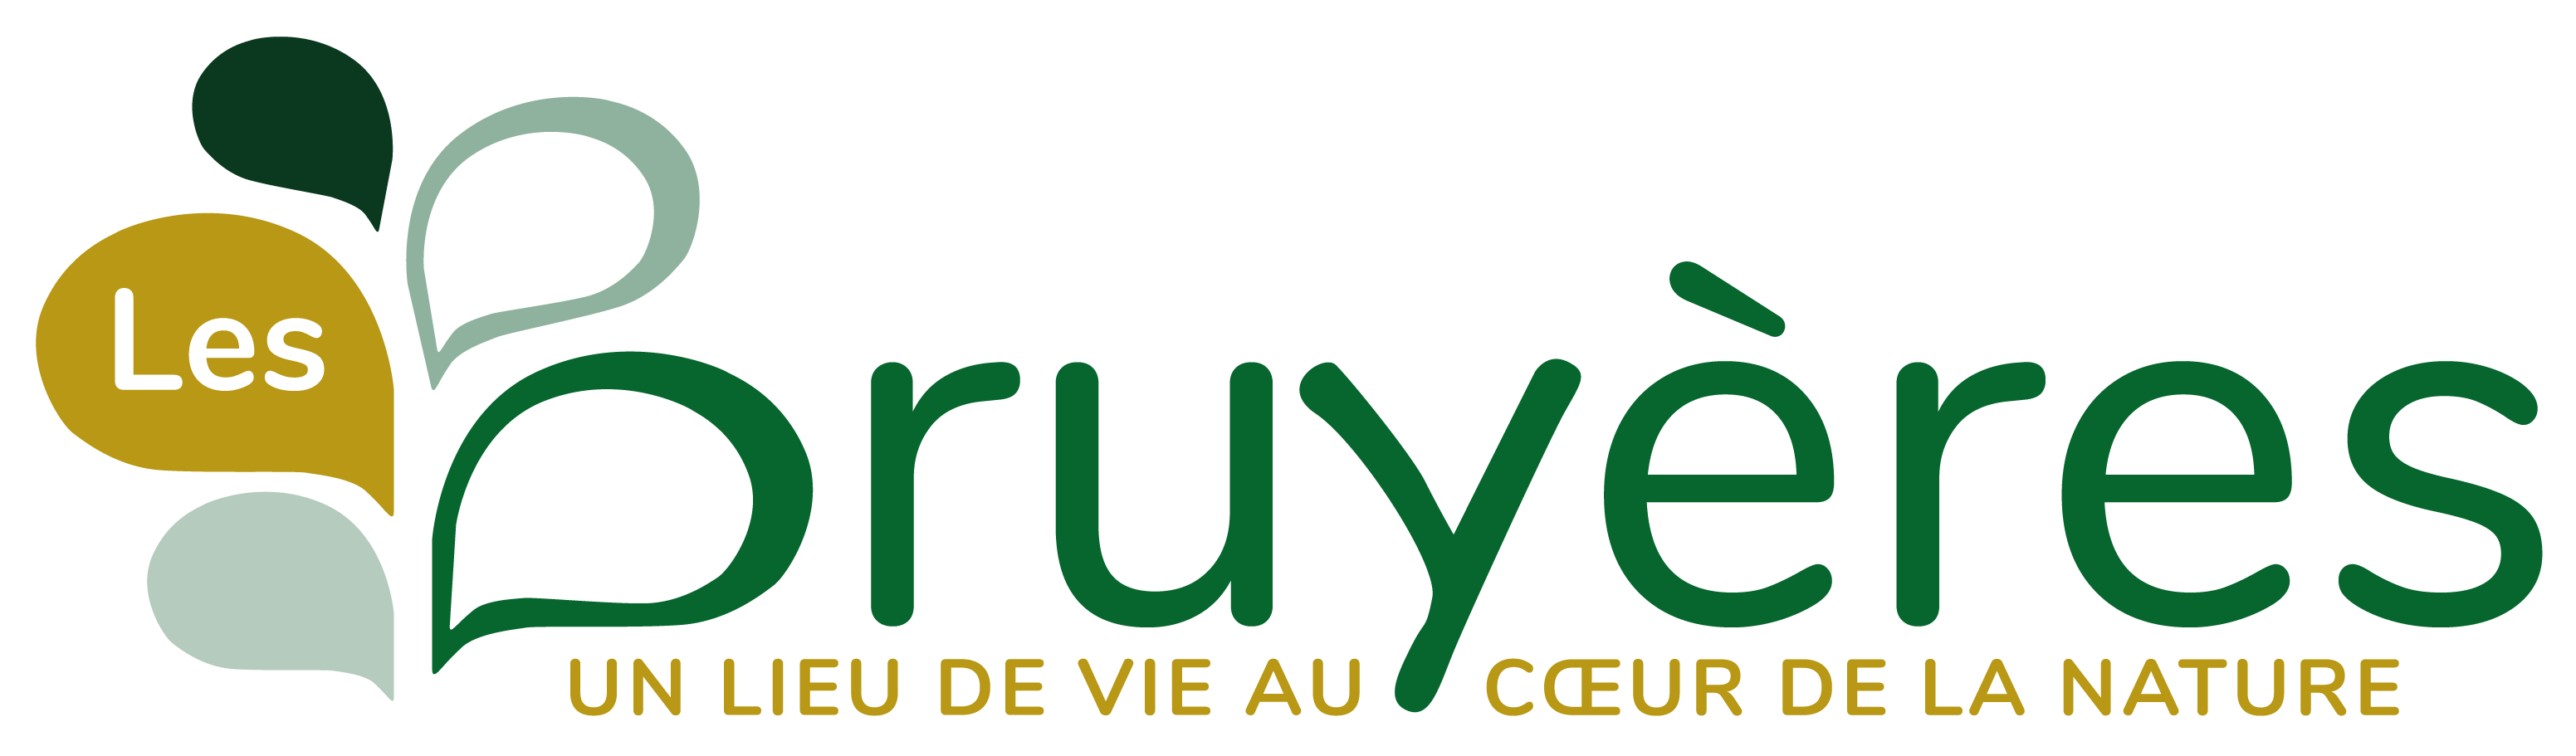 Bannière de Centre Les Bruyères